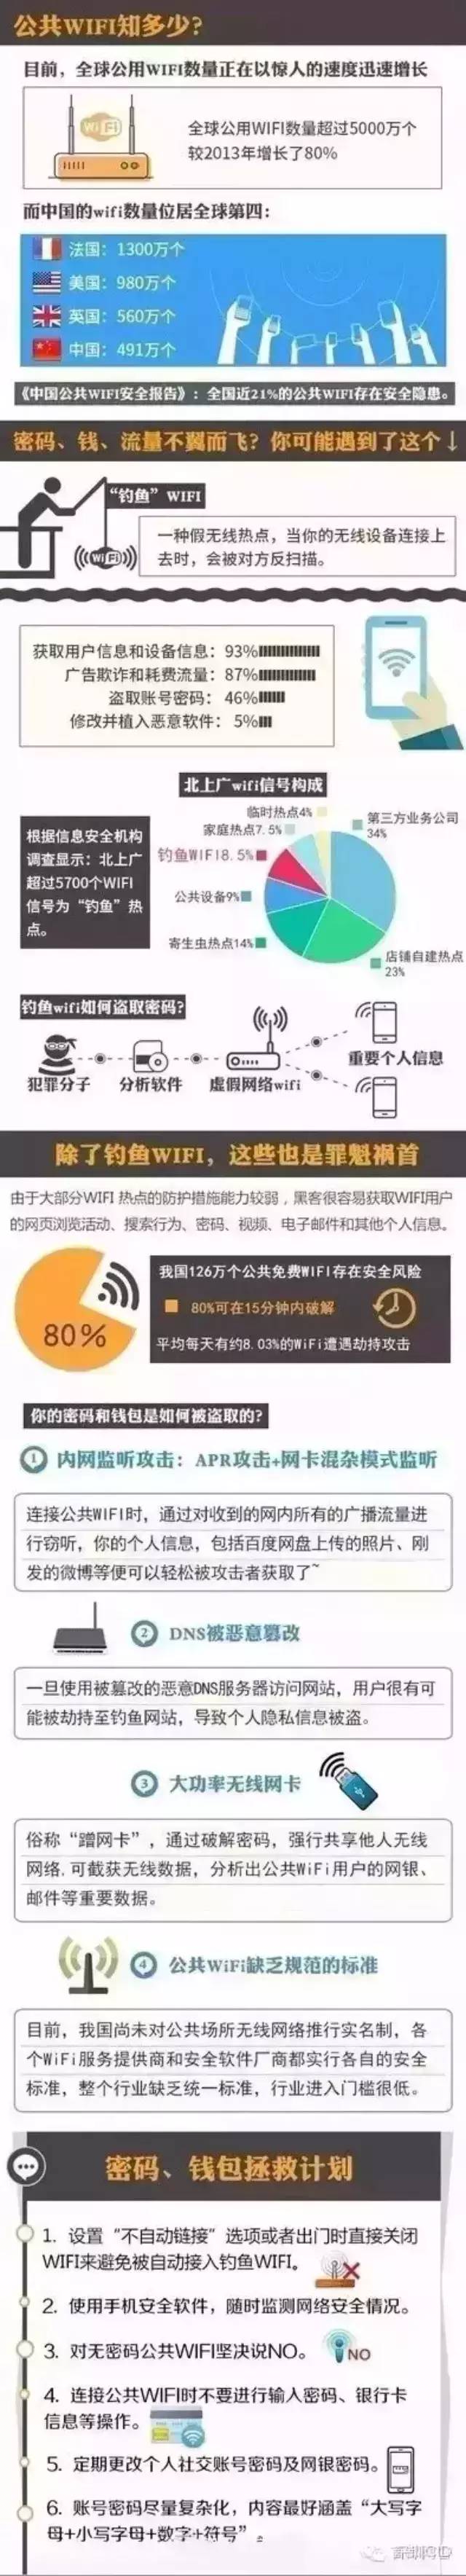 禹州人:不要随便蹭网！这些地方超8%无线信号为“钓鱼WiFi” ！